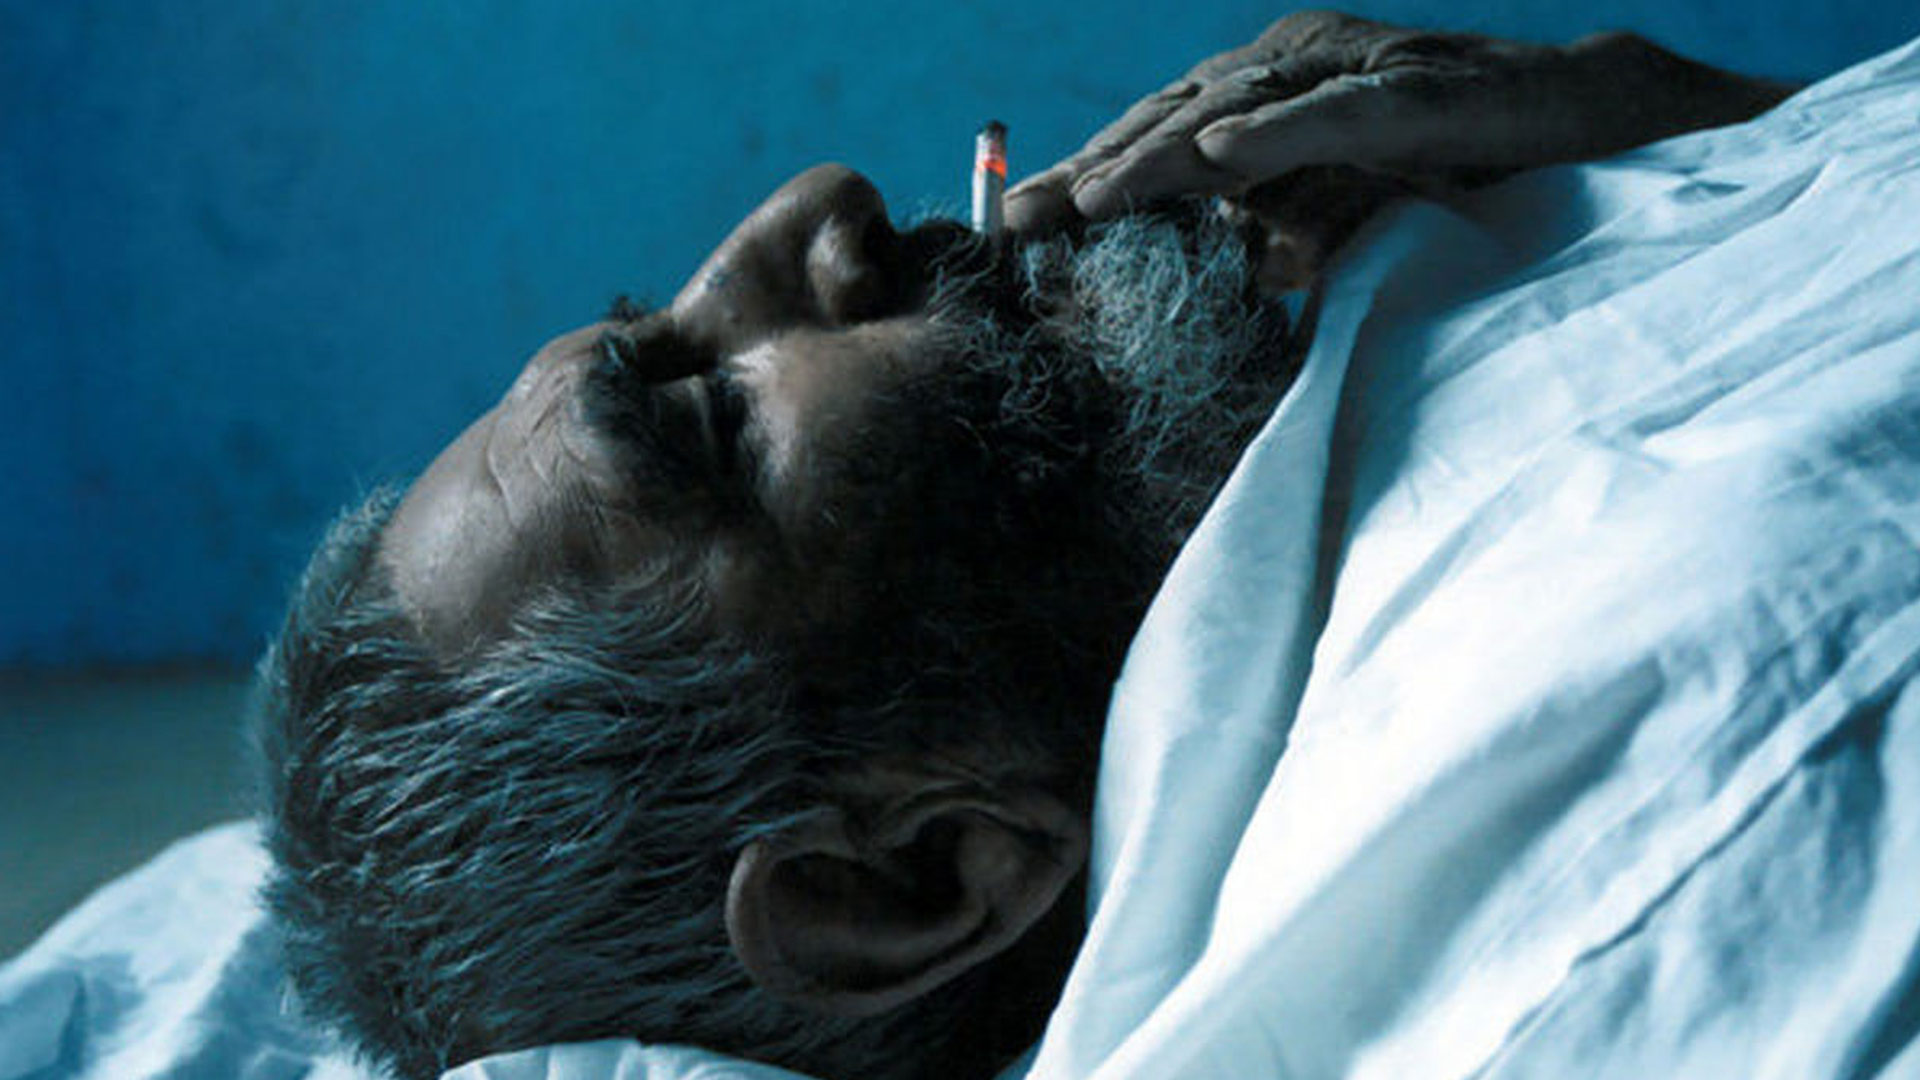 عباس اسفندیاری در حال کشیدن سیگار در فیلم خواب تلخ